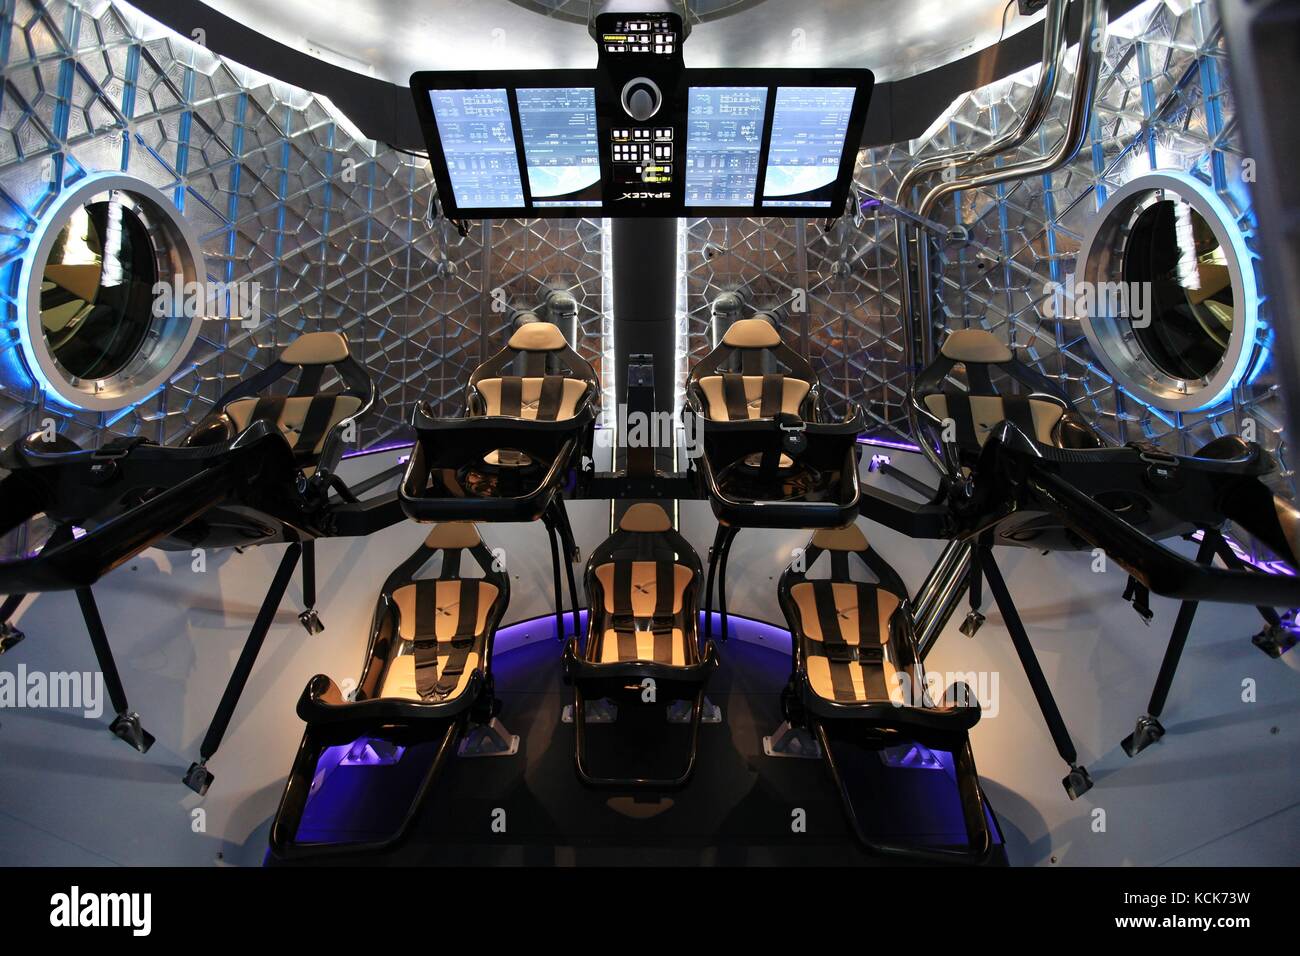 El interior de la nasa spacex dragon v2-rated humano nave tiene una capacidad de siete tripulantes, 30 de mayo de 2014 en Hawthorne, California. (Foto por Dimitri gerondidakis via planetpix) Foto de stock